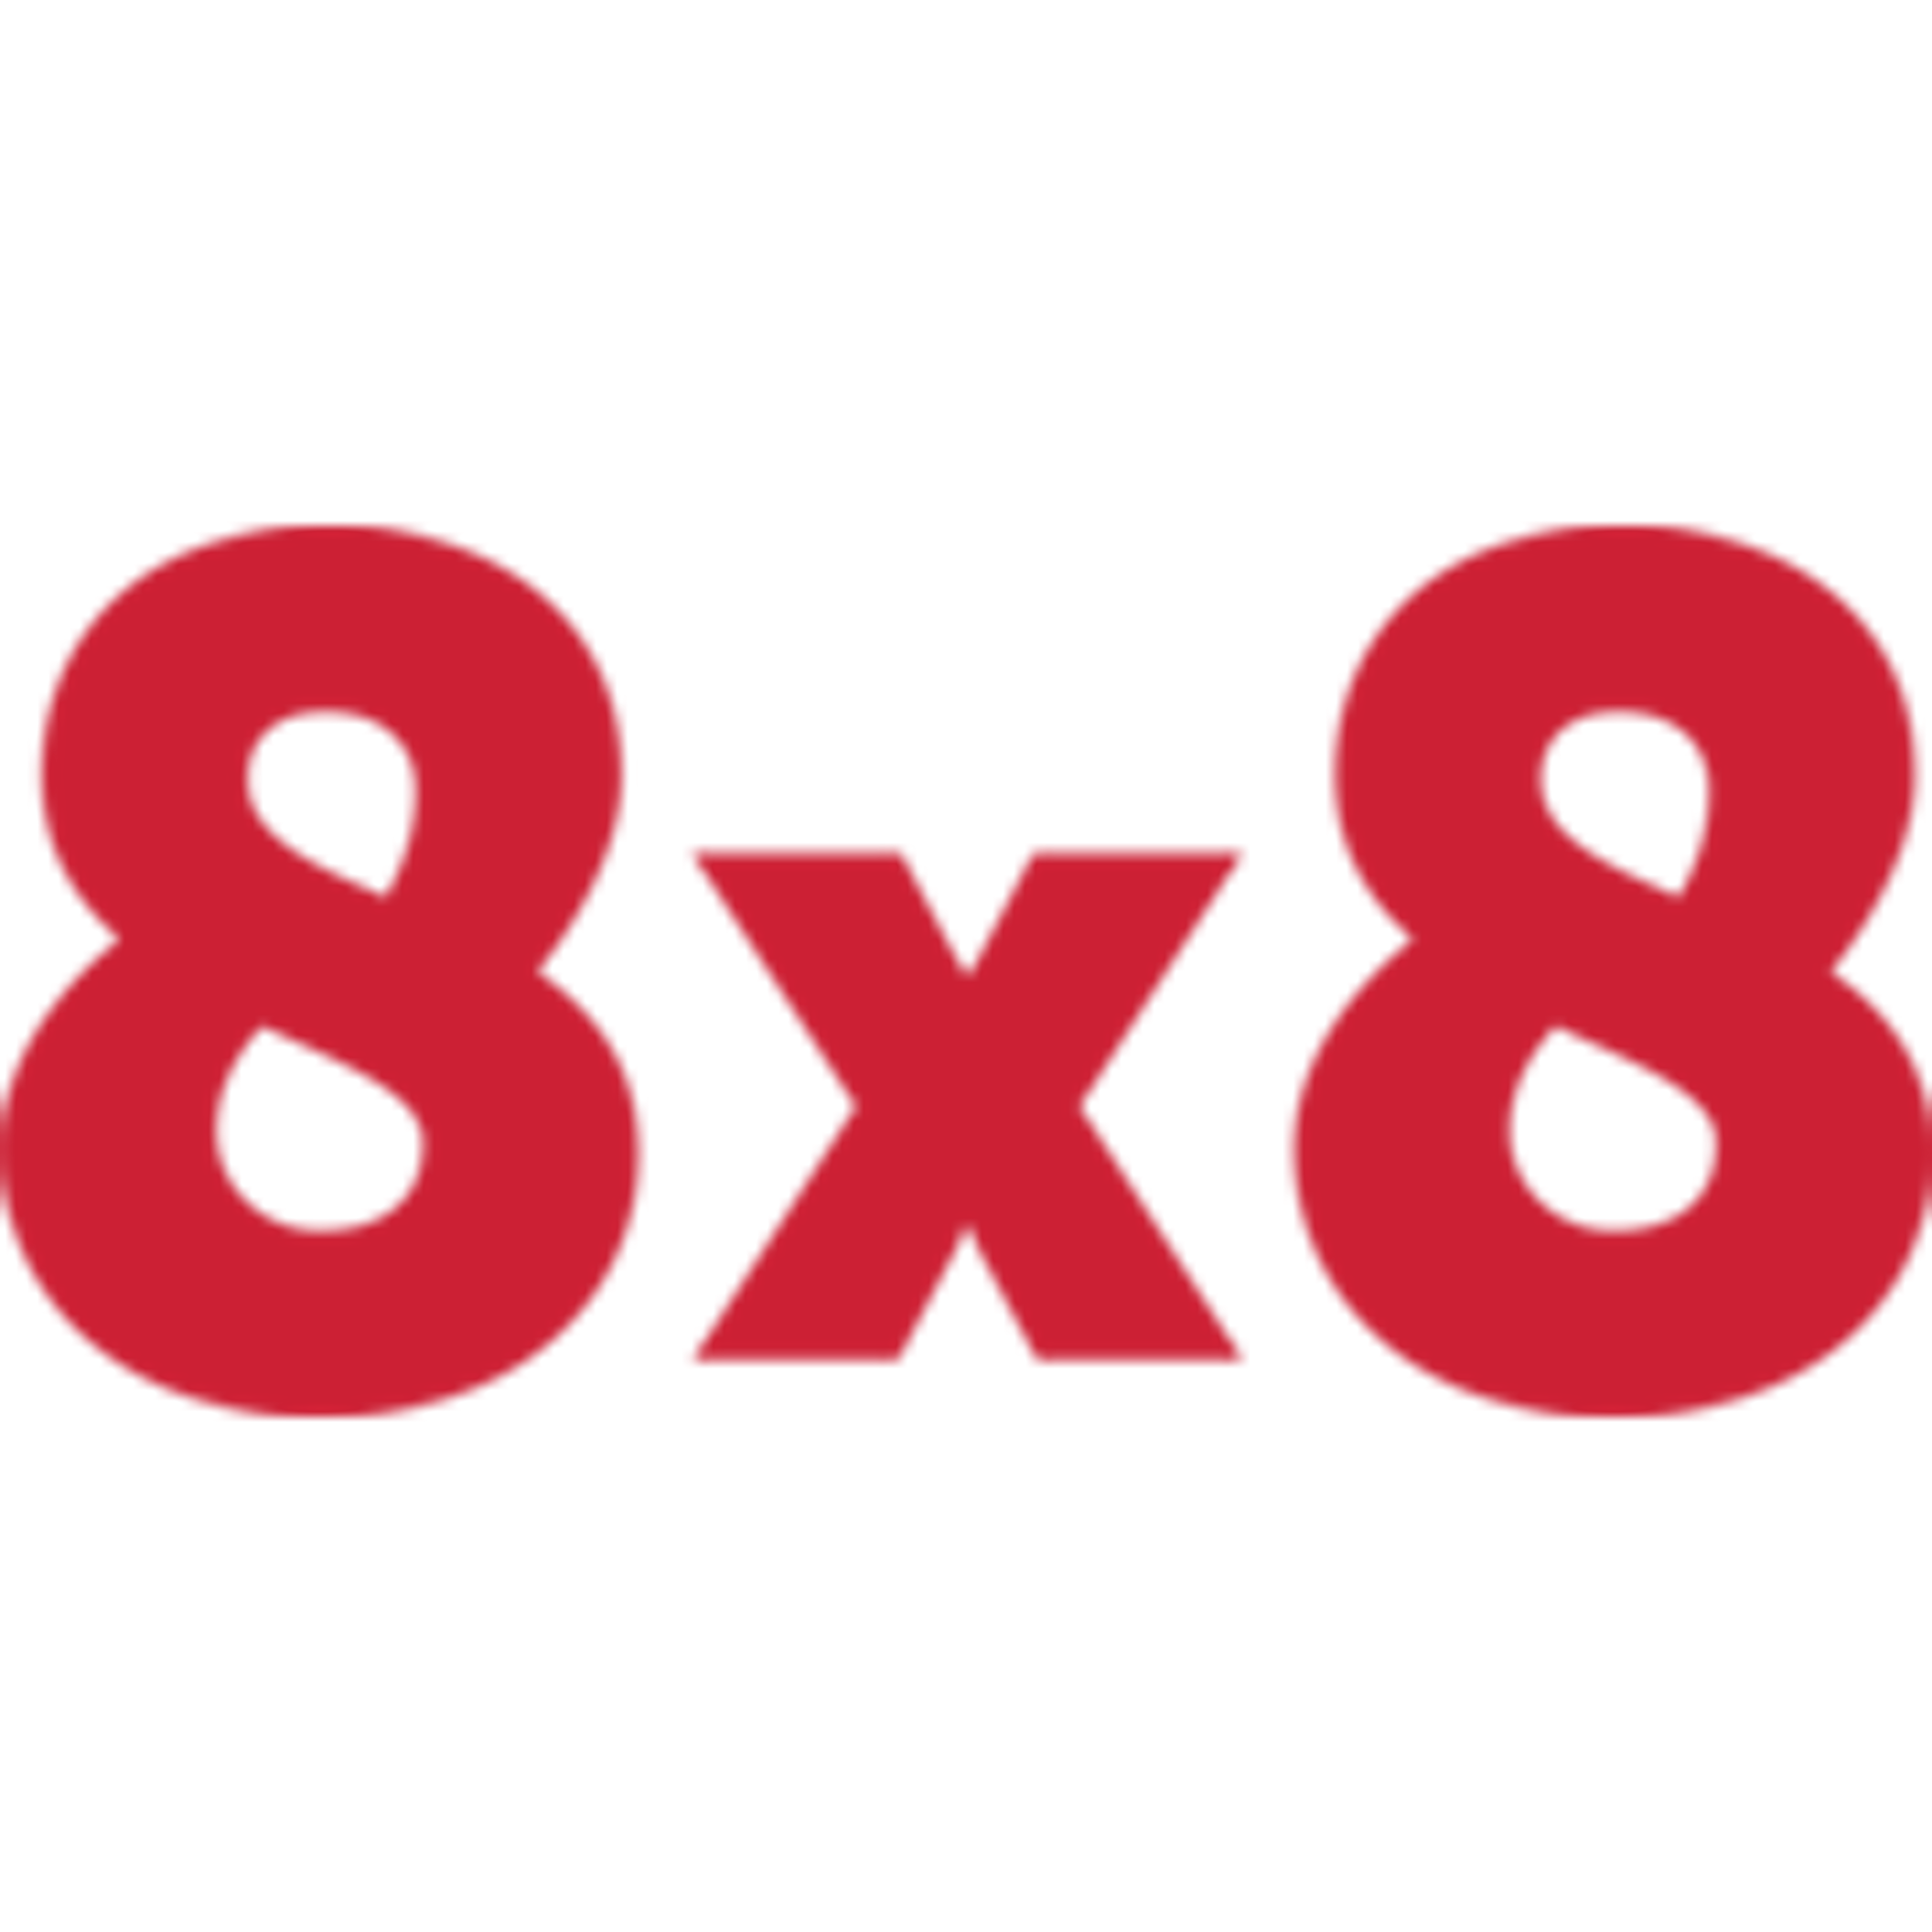 8x8 Contact Center Logo